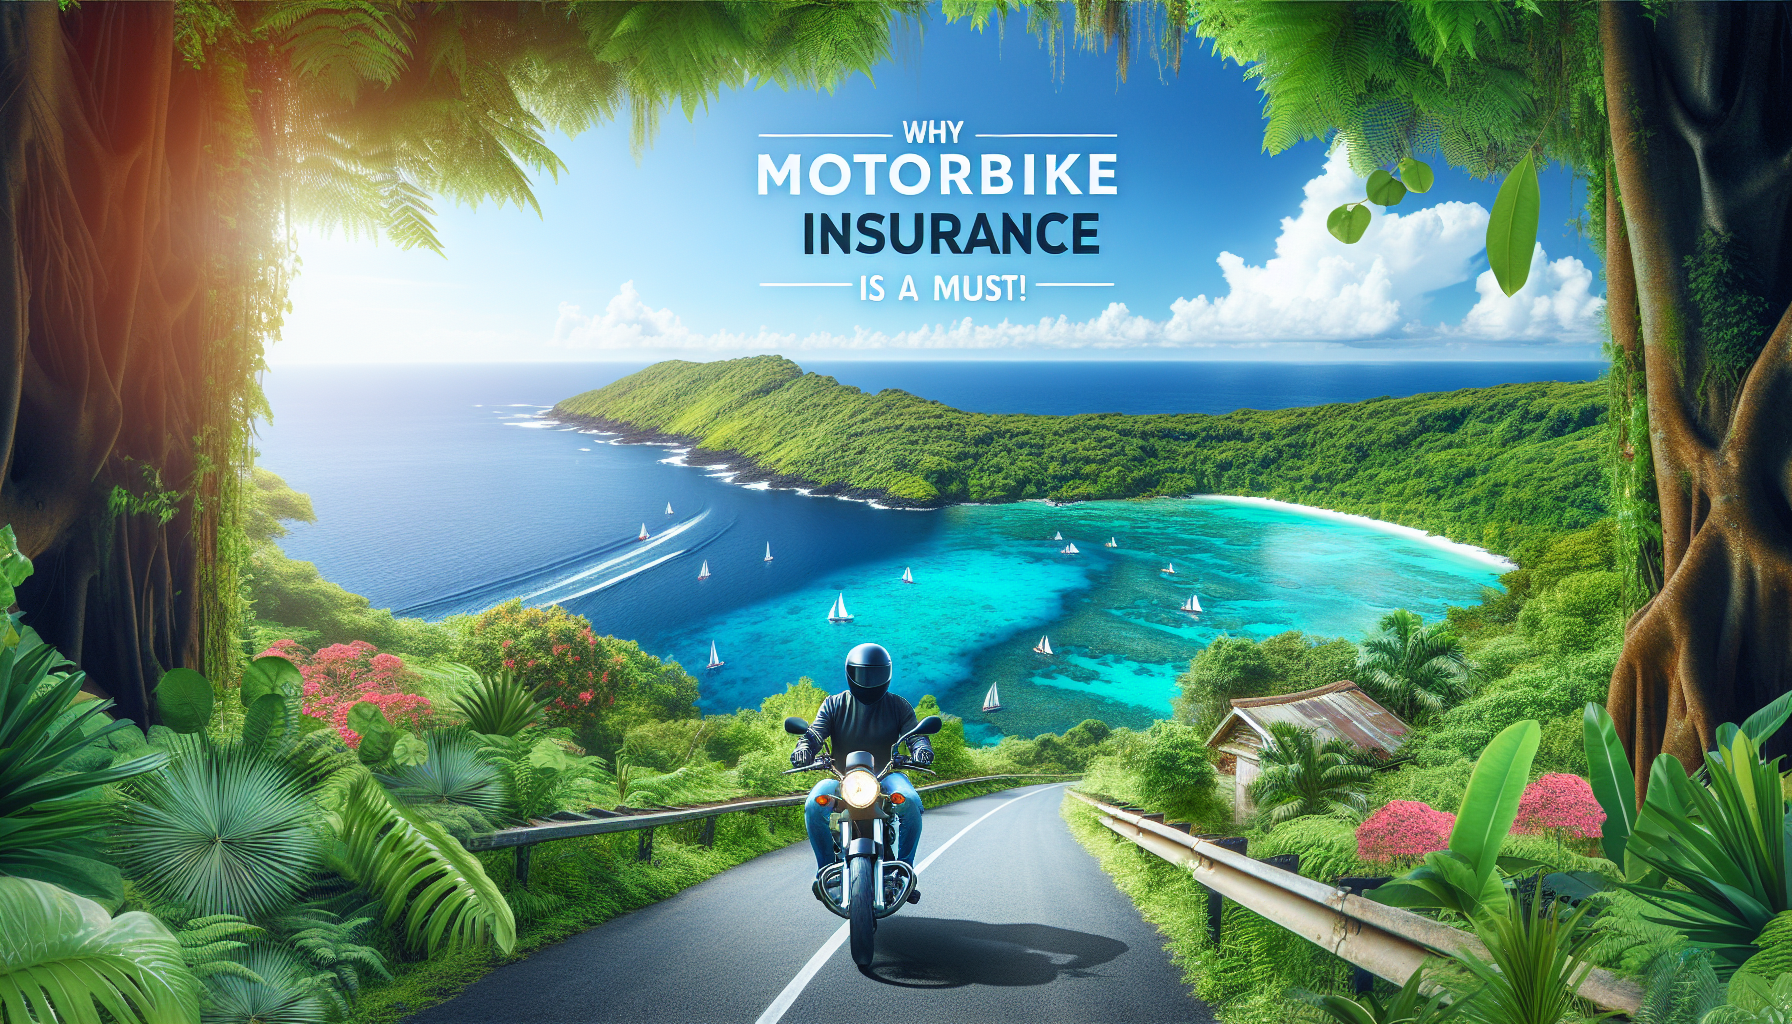 découvrez pourquoi il est essentiel de souscrire une assurance moto à la réunion et comment vous protéger sur la route avec notre assurance moto adaptée à l'île.